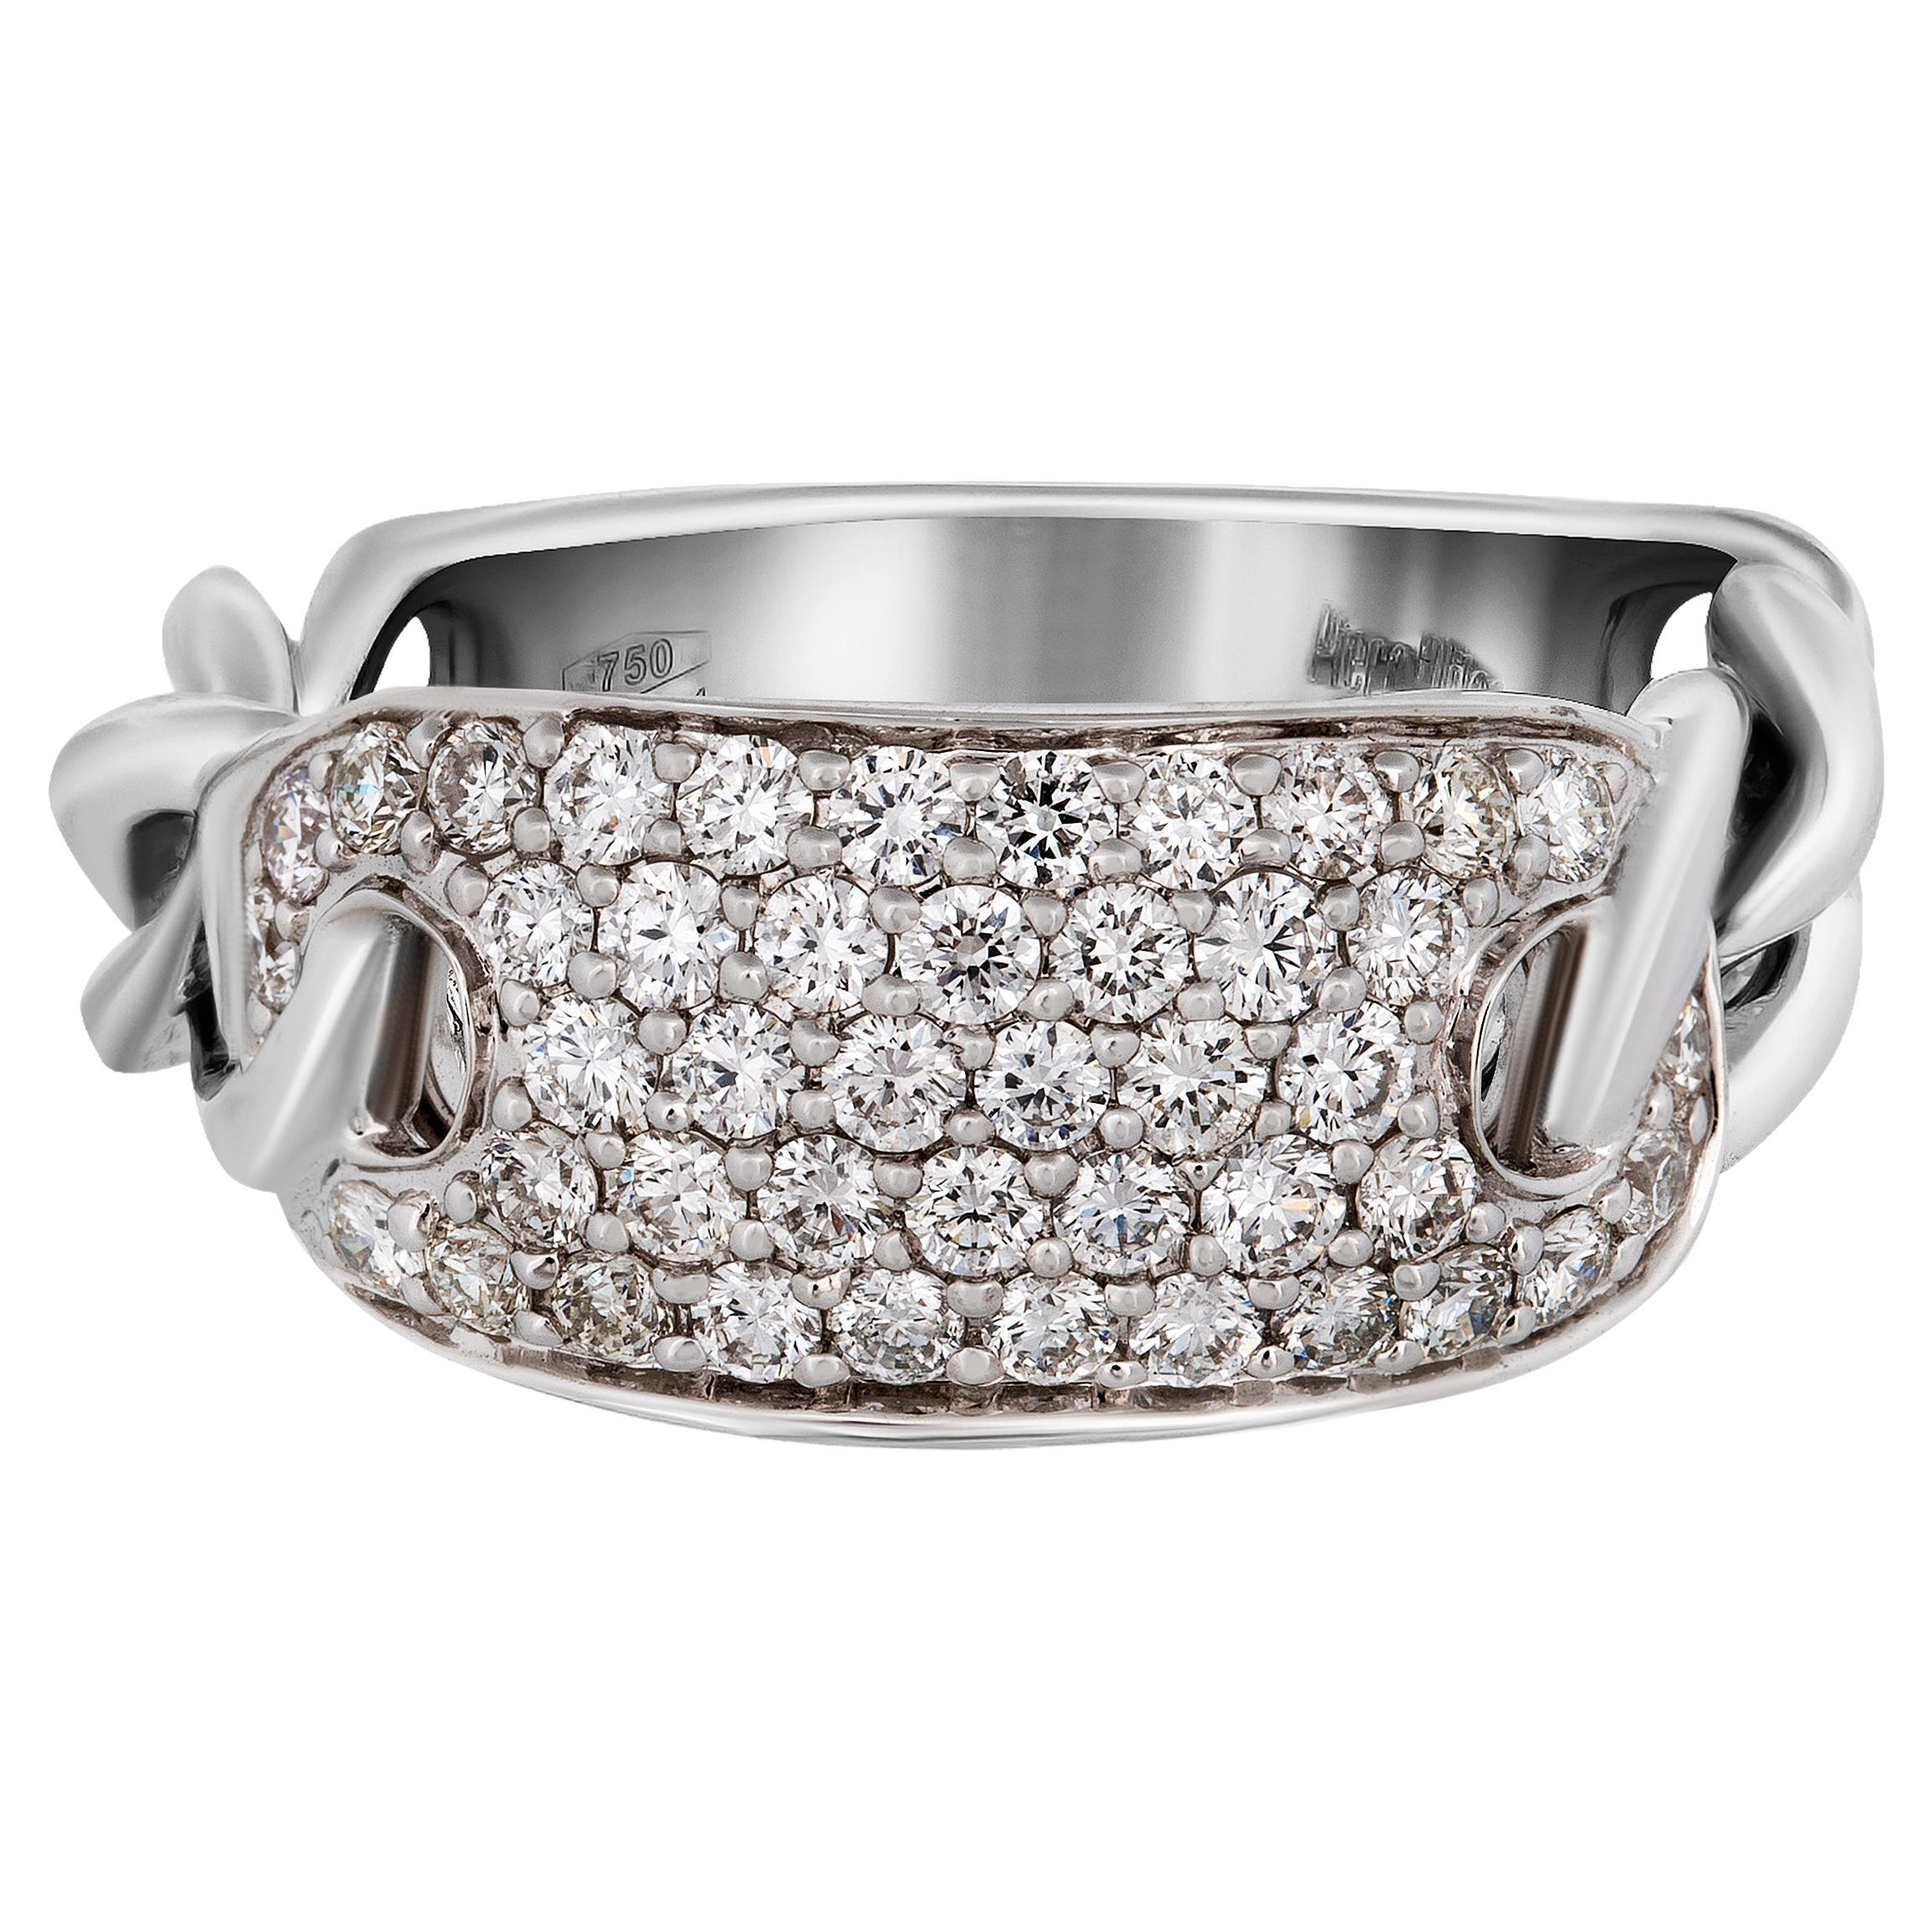 Piero Milano 18K White Gold Diamond Ring Sz 7.25 For Sale